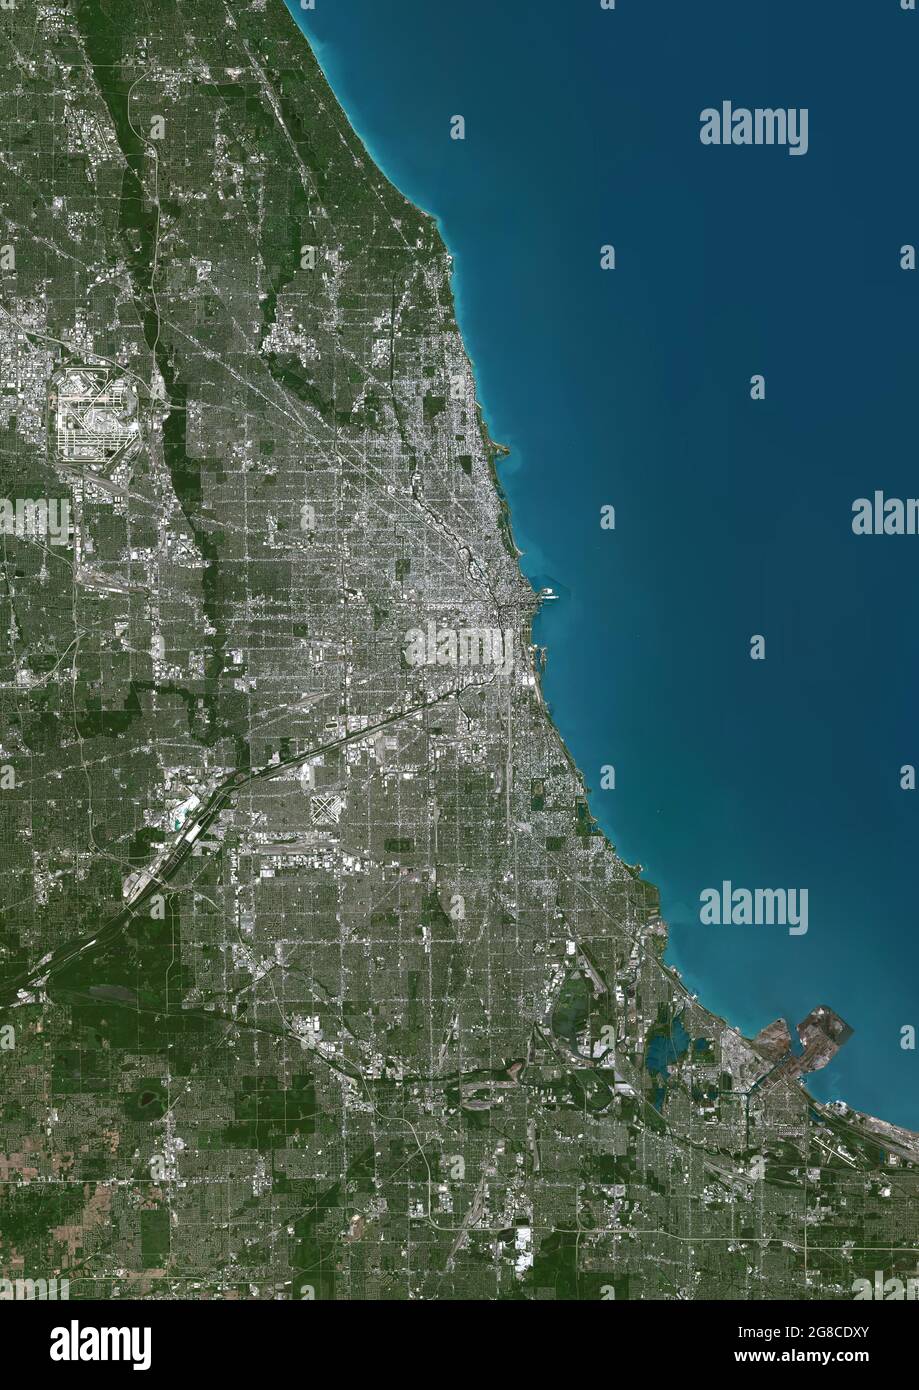 Chicago, Illinois, United States Stock Photo